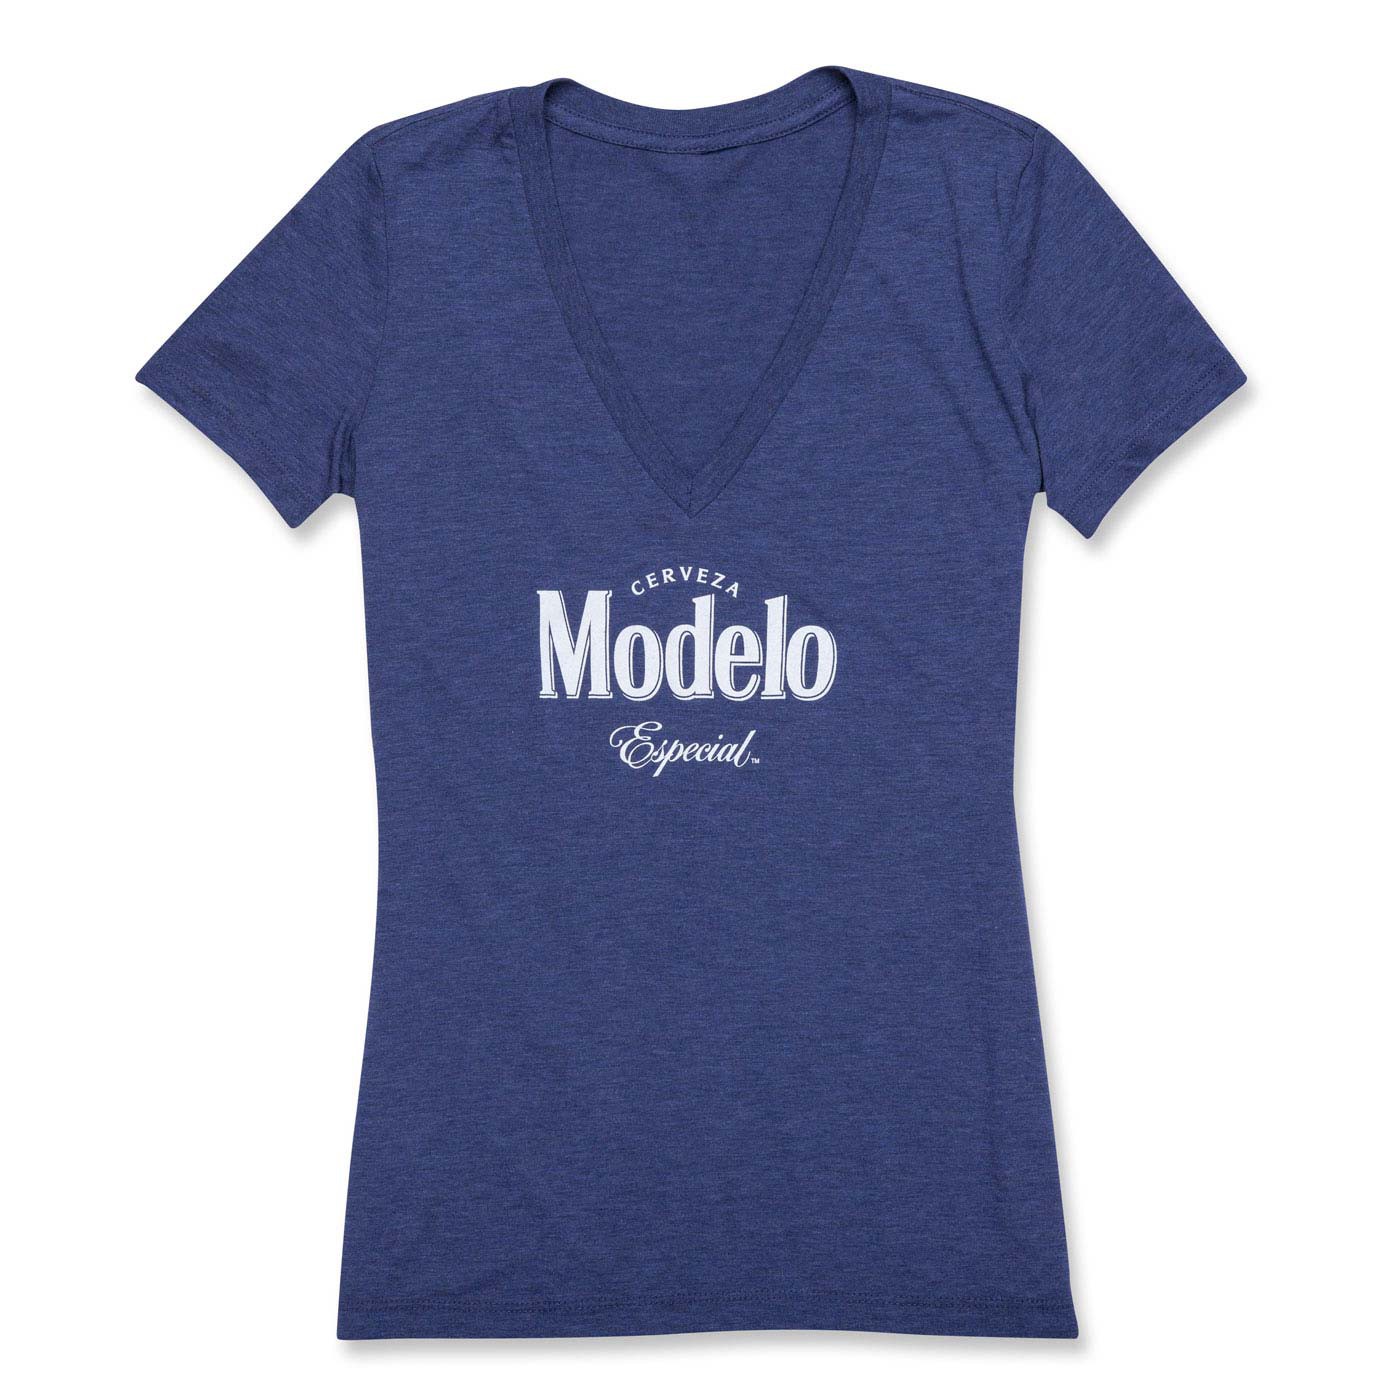 Modelo Especial Ladies Blue V-Neck Tee Shirt